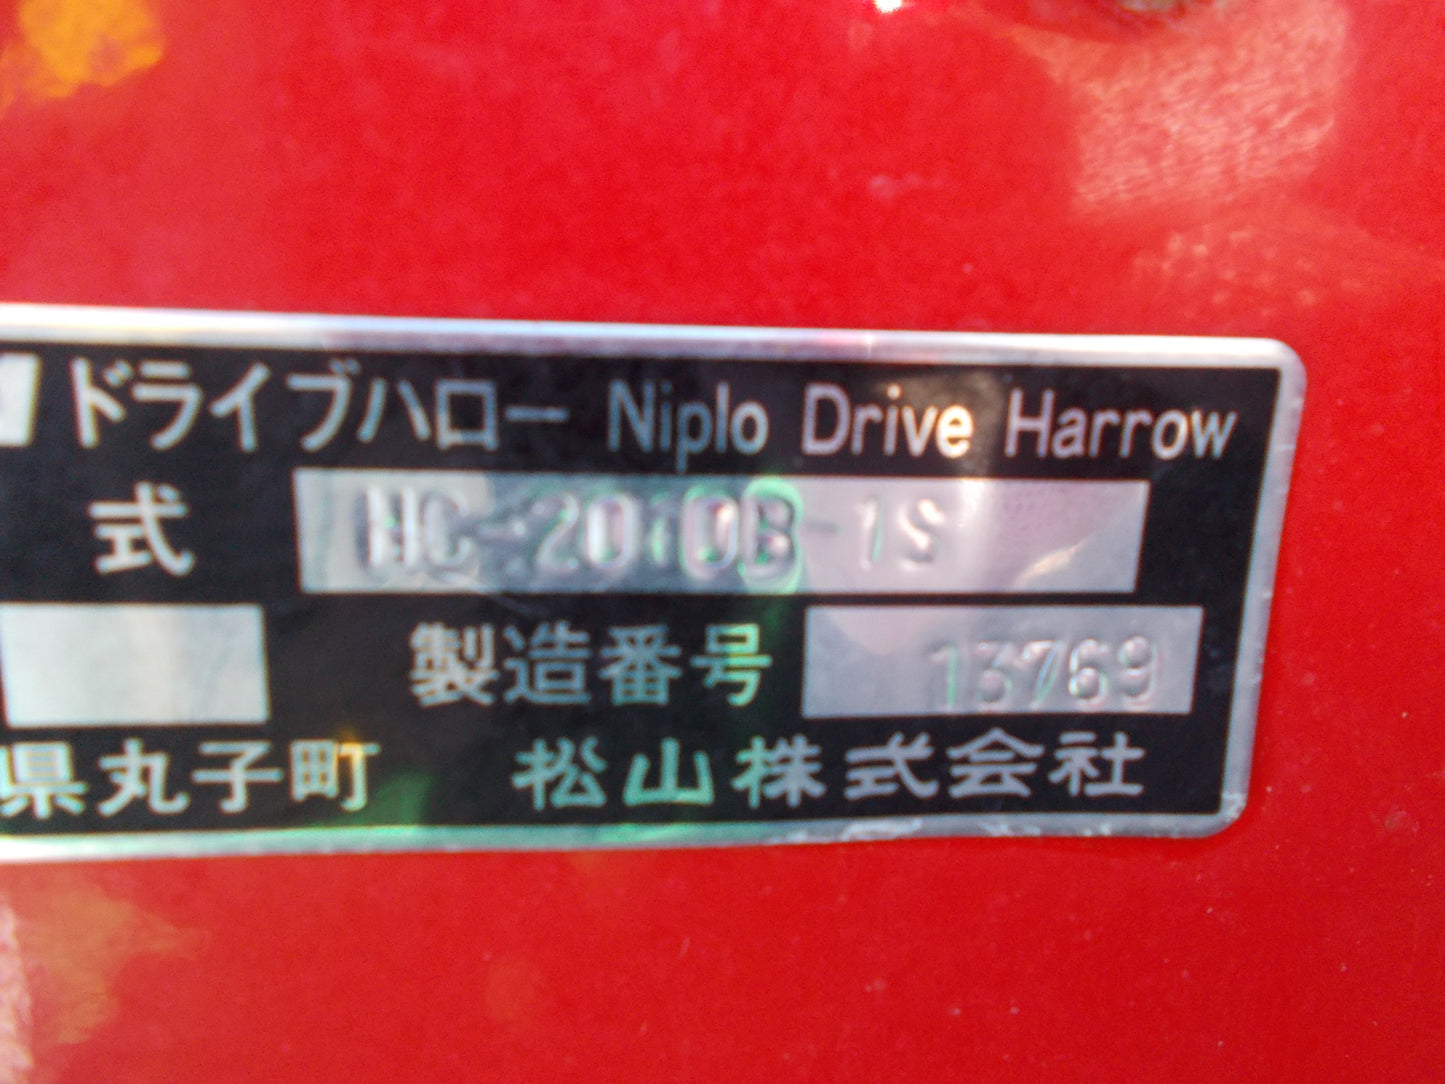 ニプロ　中古　ハロー　HC-2010B-1S